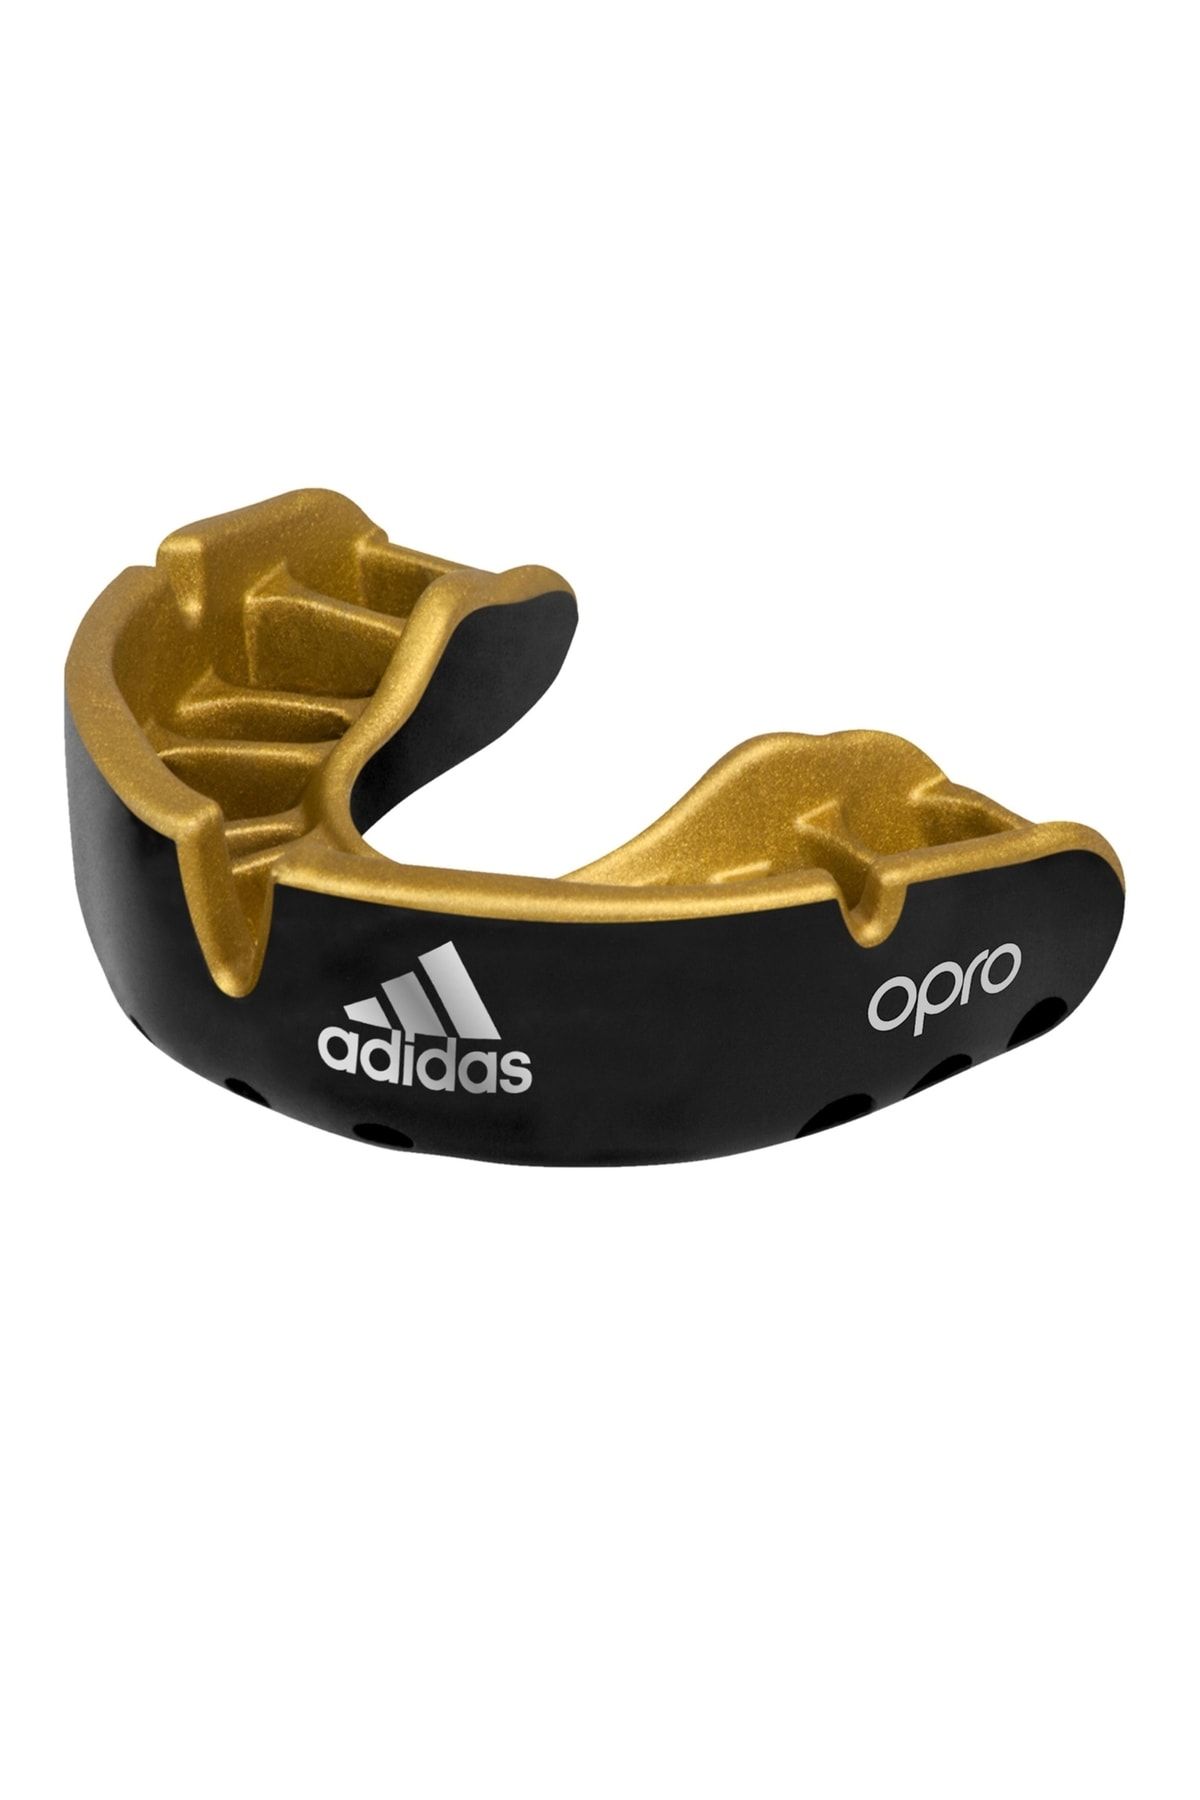 adidas Opro Adibp35 Gold Dişlik Sporcu Dişliği Profesyonel Dişlik